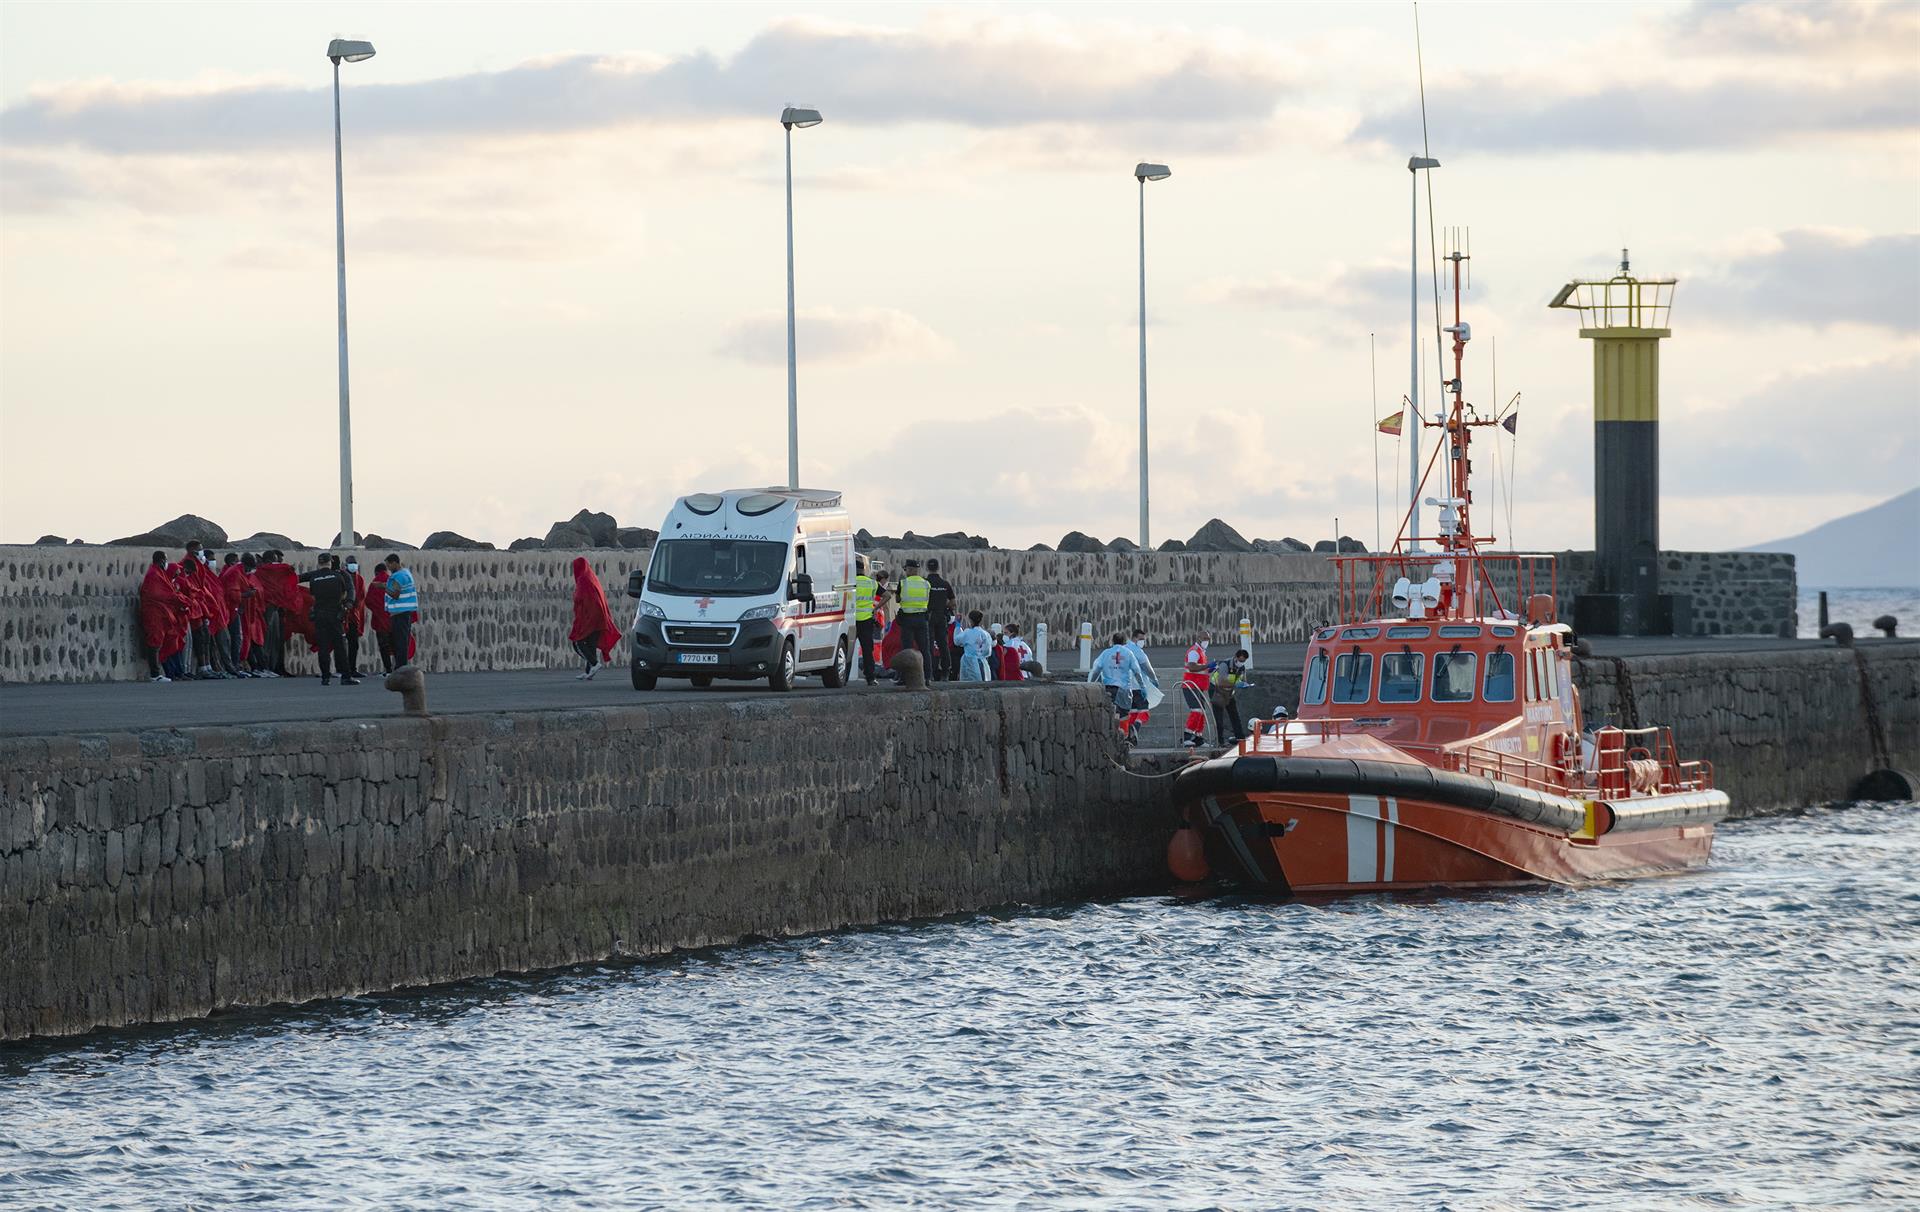 Foto de archivo de la Salvamar Al Nair en el puerto de Arrecife (Lanzarote) tomada el 6 de septiembre, tras su último servicio de rescate de inmigrantes hasta el realizado esta madrugada. EFE/Adriel Perdomo